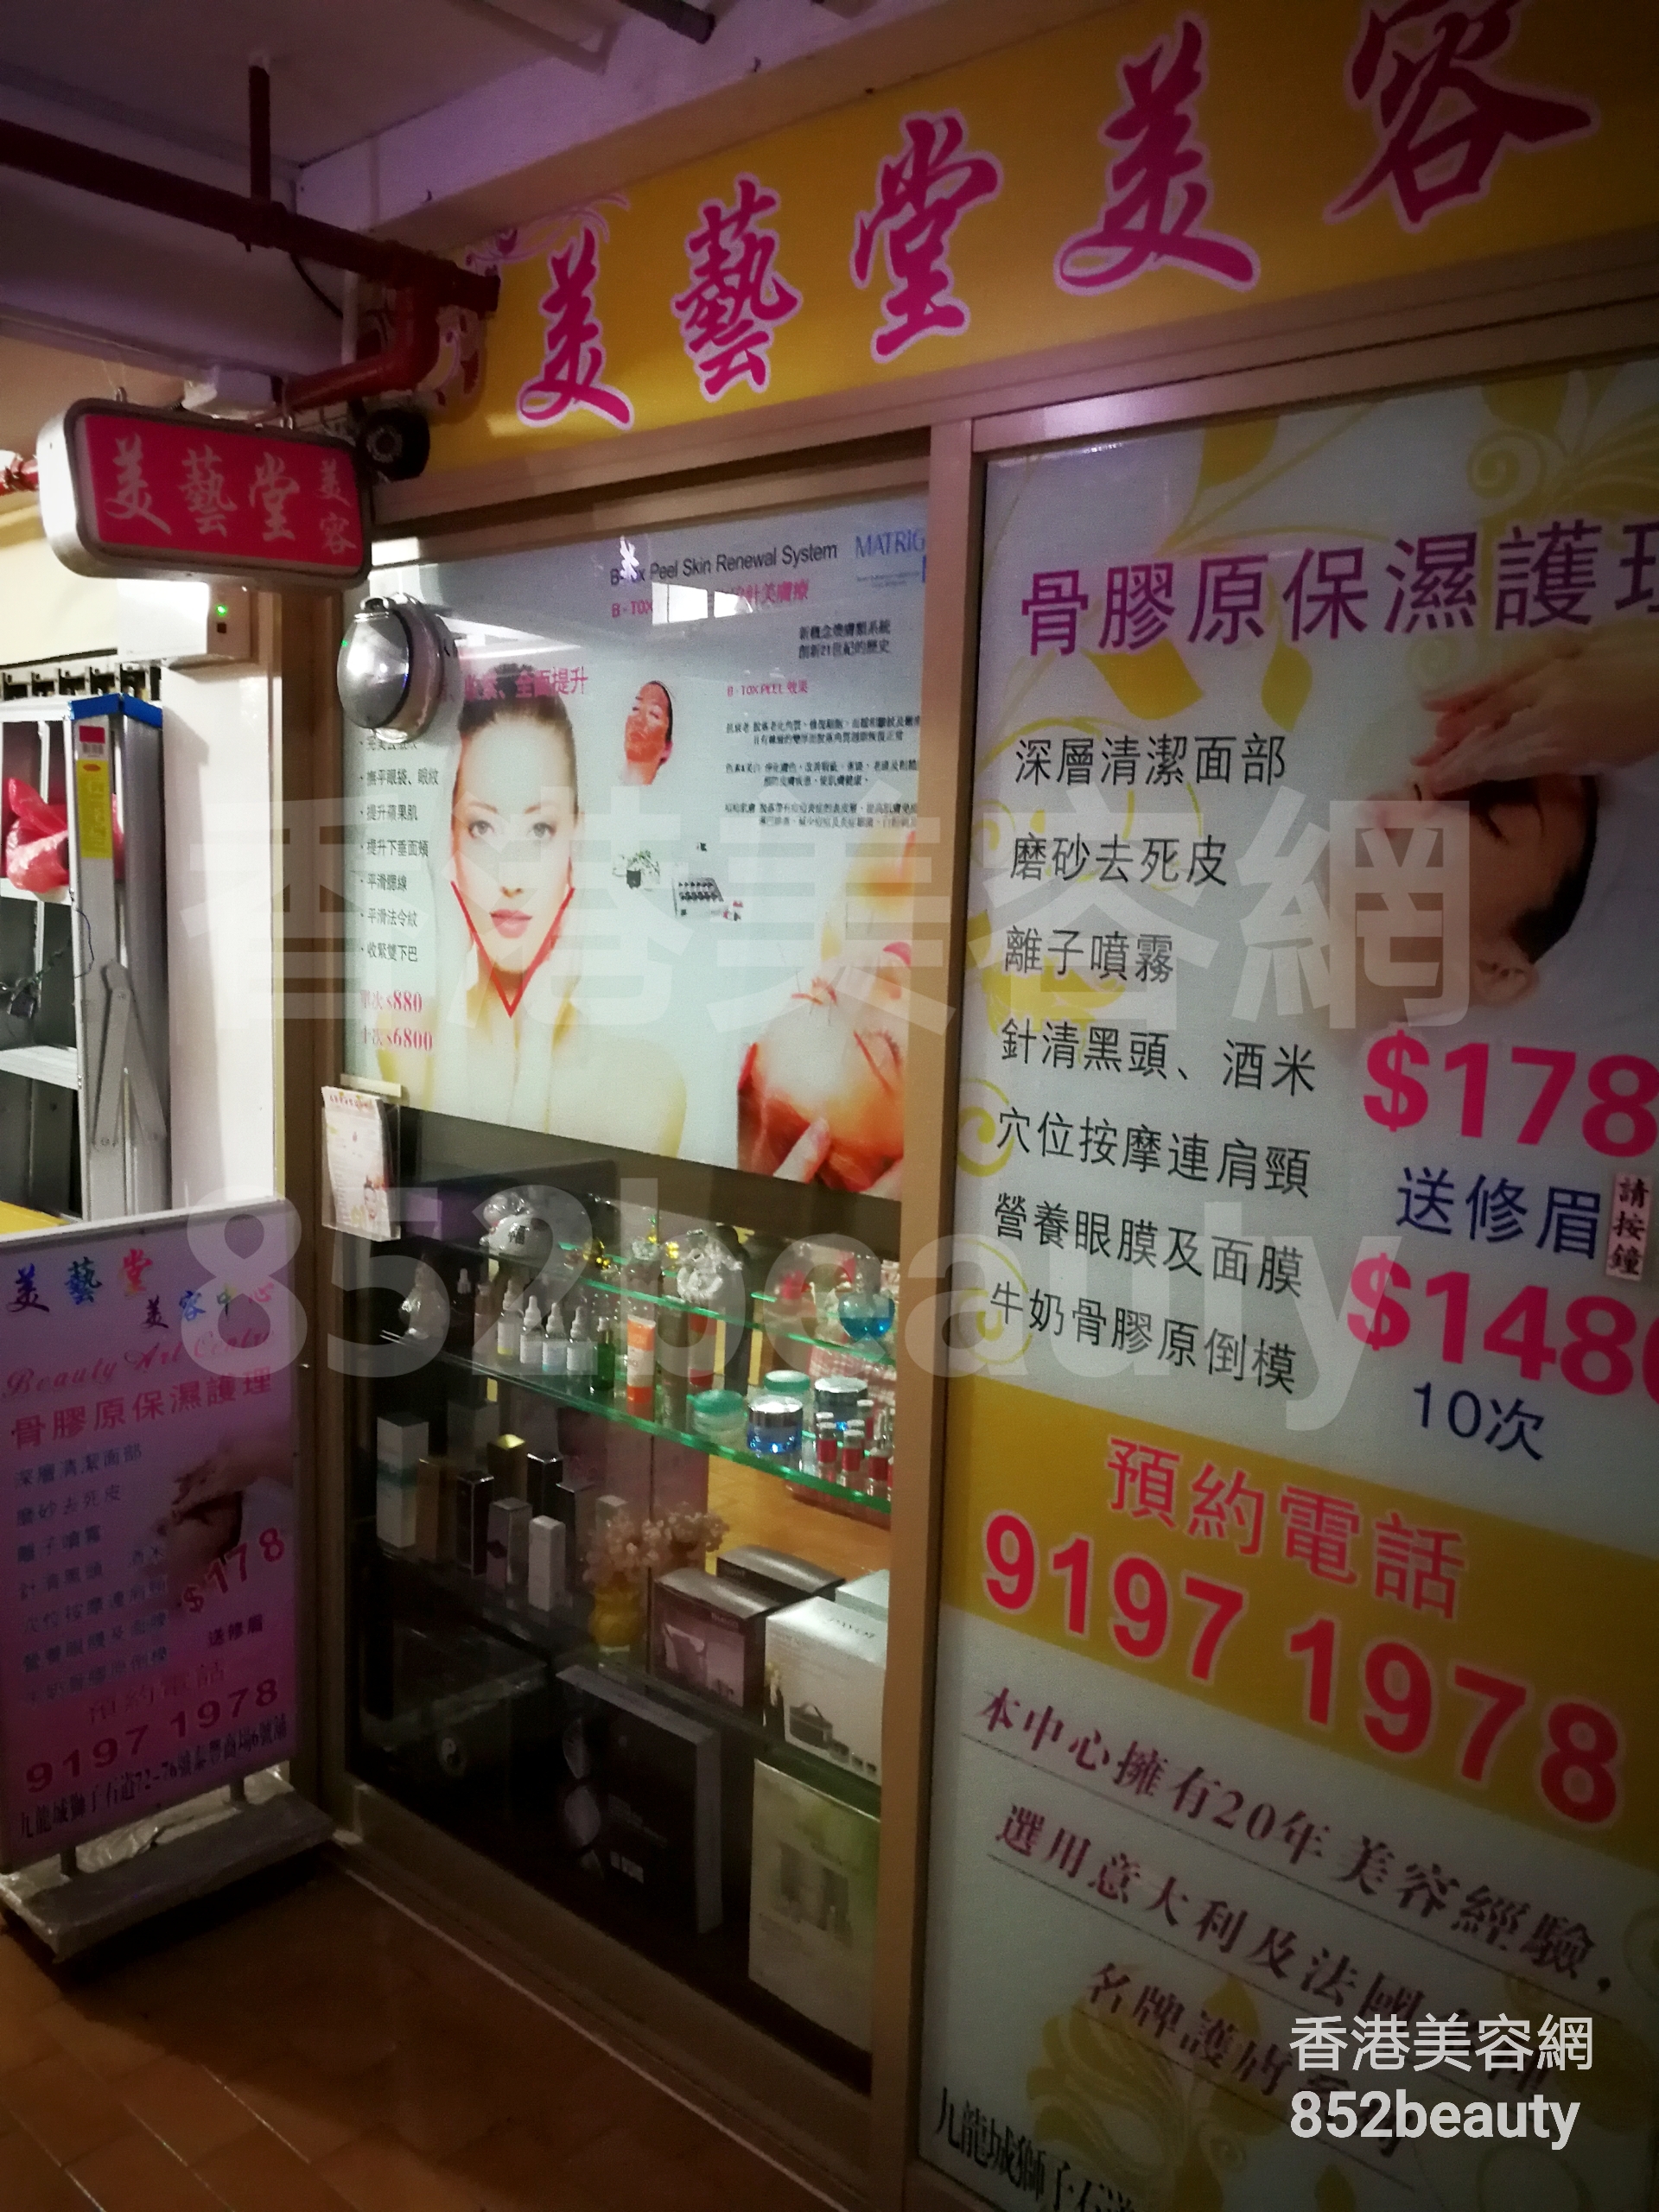 香港美容網 Hong Kong Beauty Salon 美容院 / 美容師: 美藝堂專業美容中心